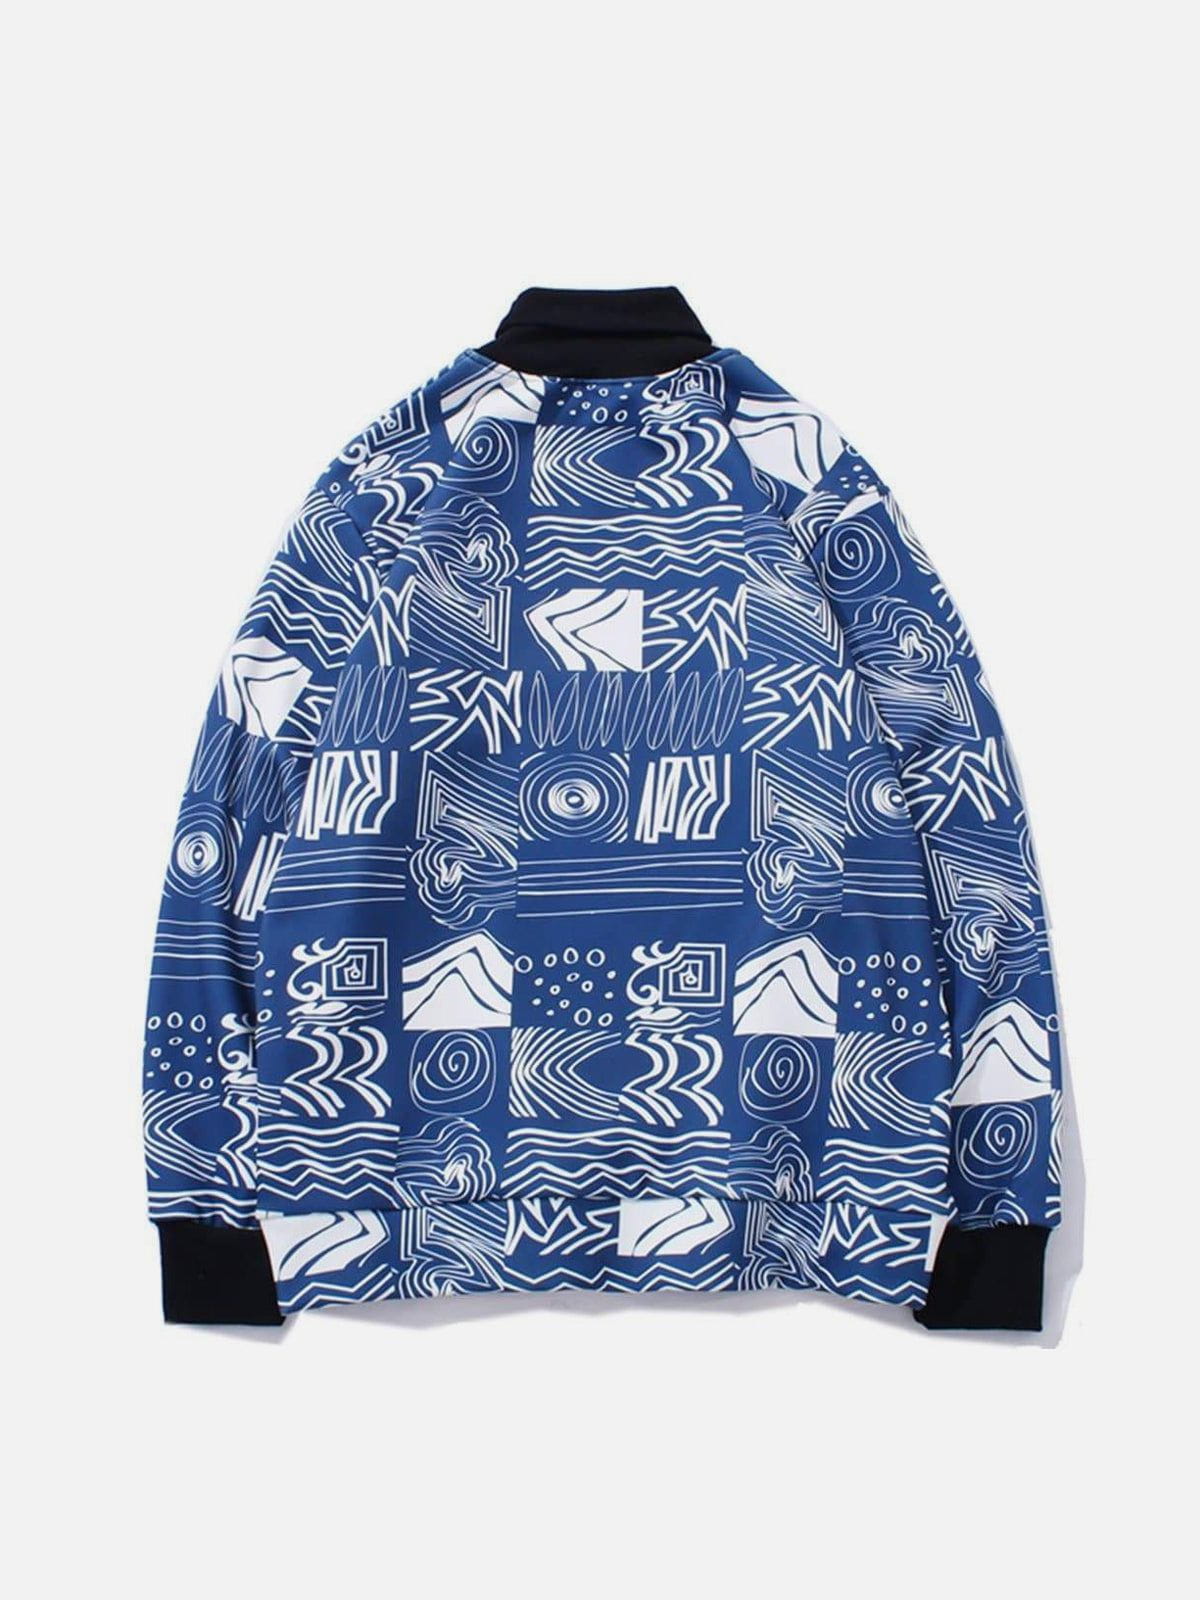 LUXENFY™ - Fleece Turtleneck Sweatshirt luxenfy.com